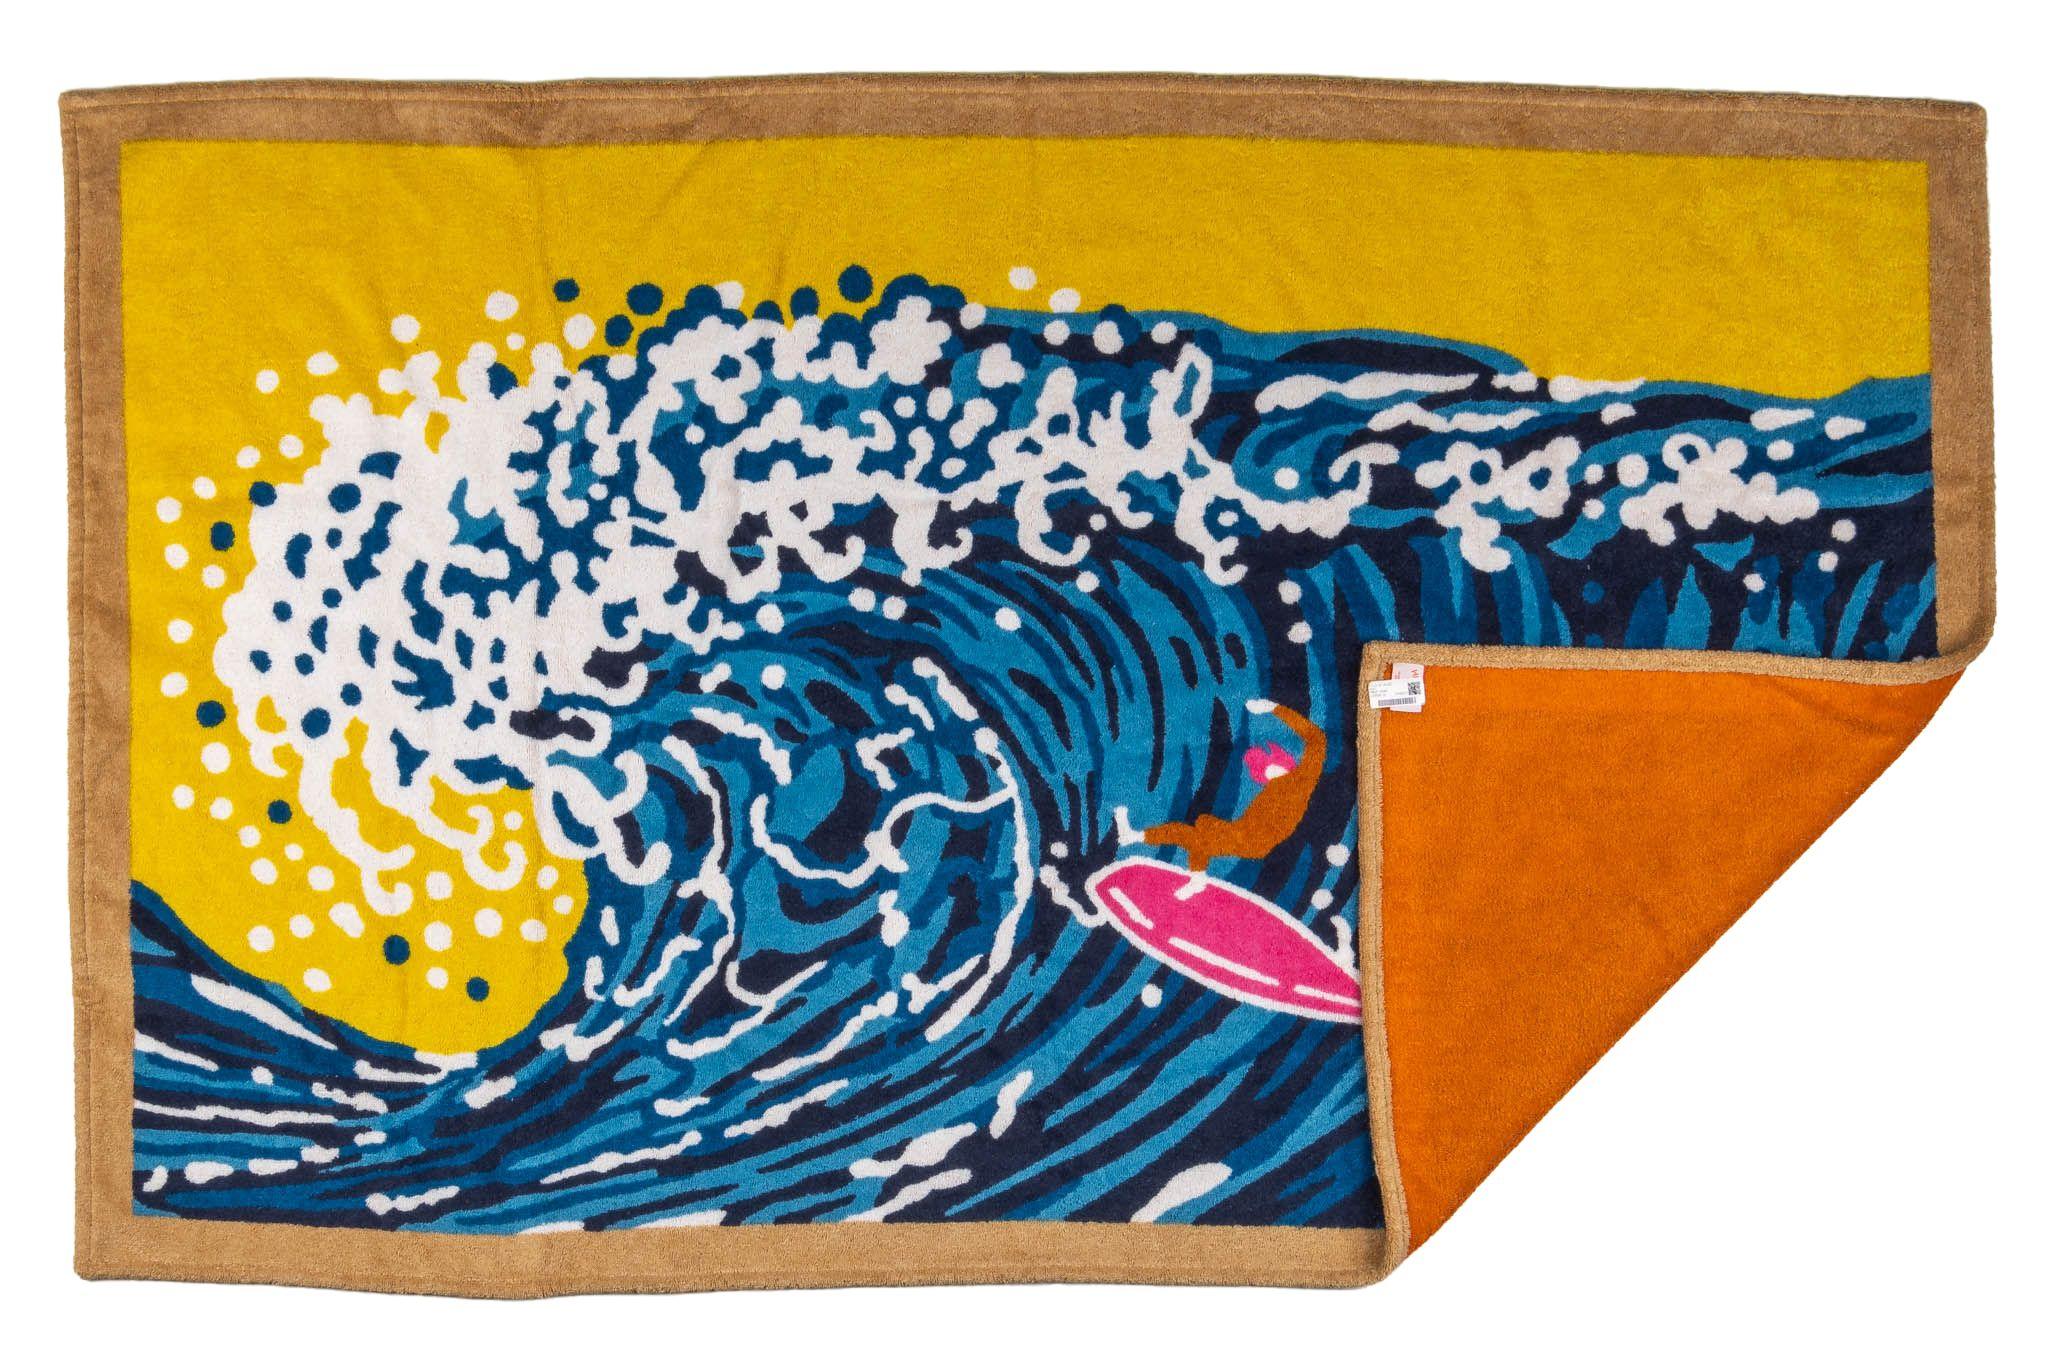 Hermès Strandhandtuch aus Baumwolle mit Wellen- und Surfermotiv. Neu mit Originalverpackung.